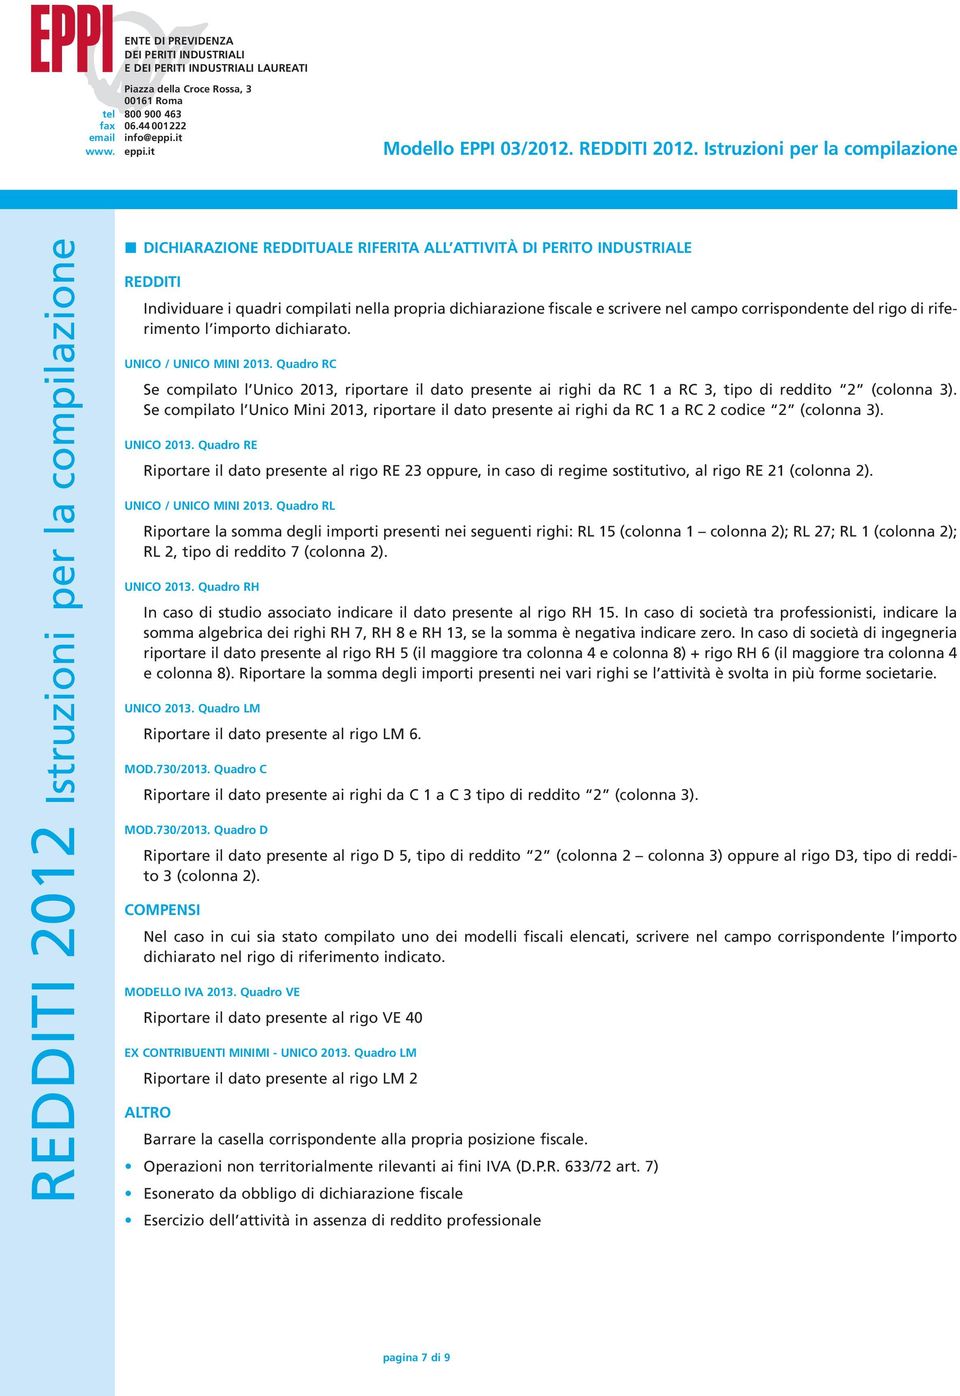 Se compilato l Unico Mini 2013, riportare il dato presente ai righi da RC 1 a RC 2 codice 2 (colonna 3). UNICO 2013.